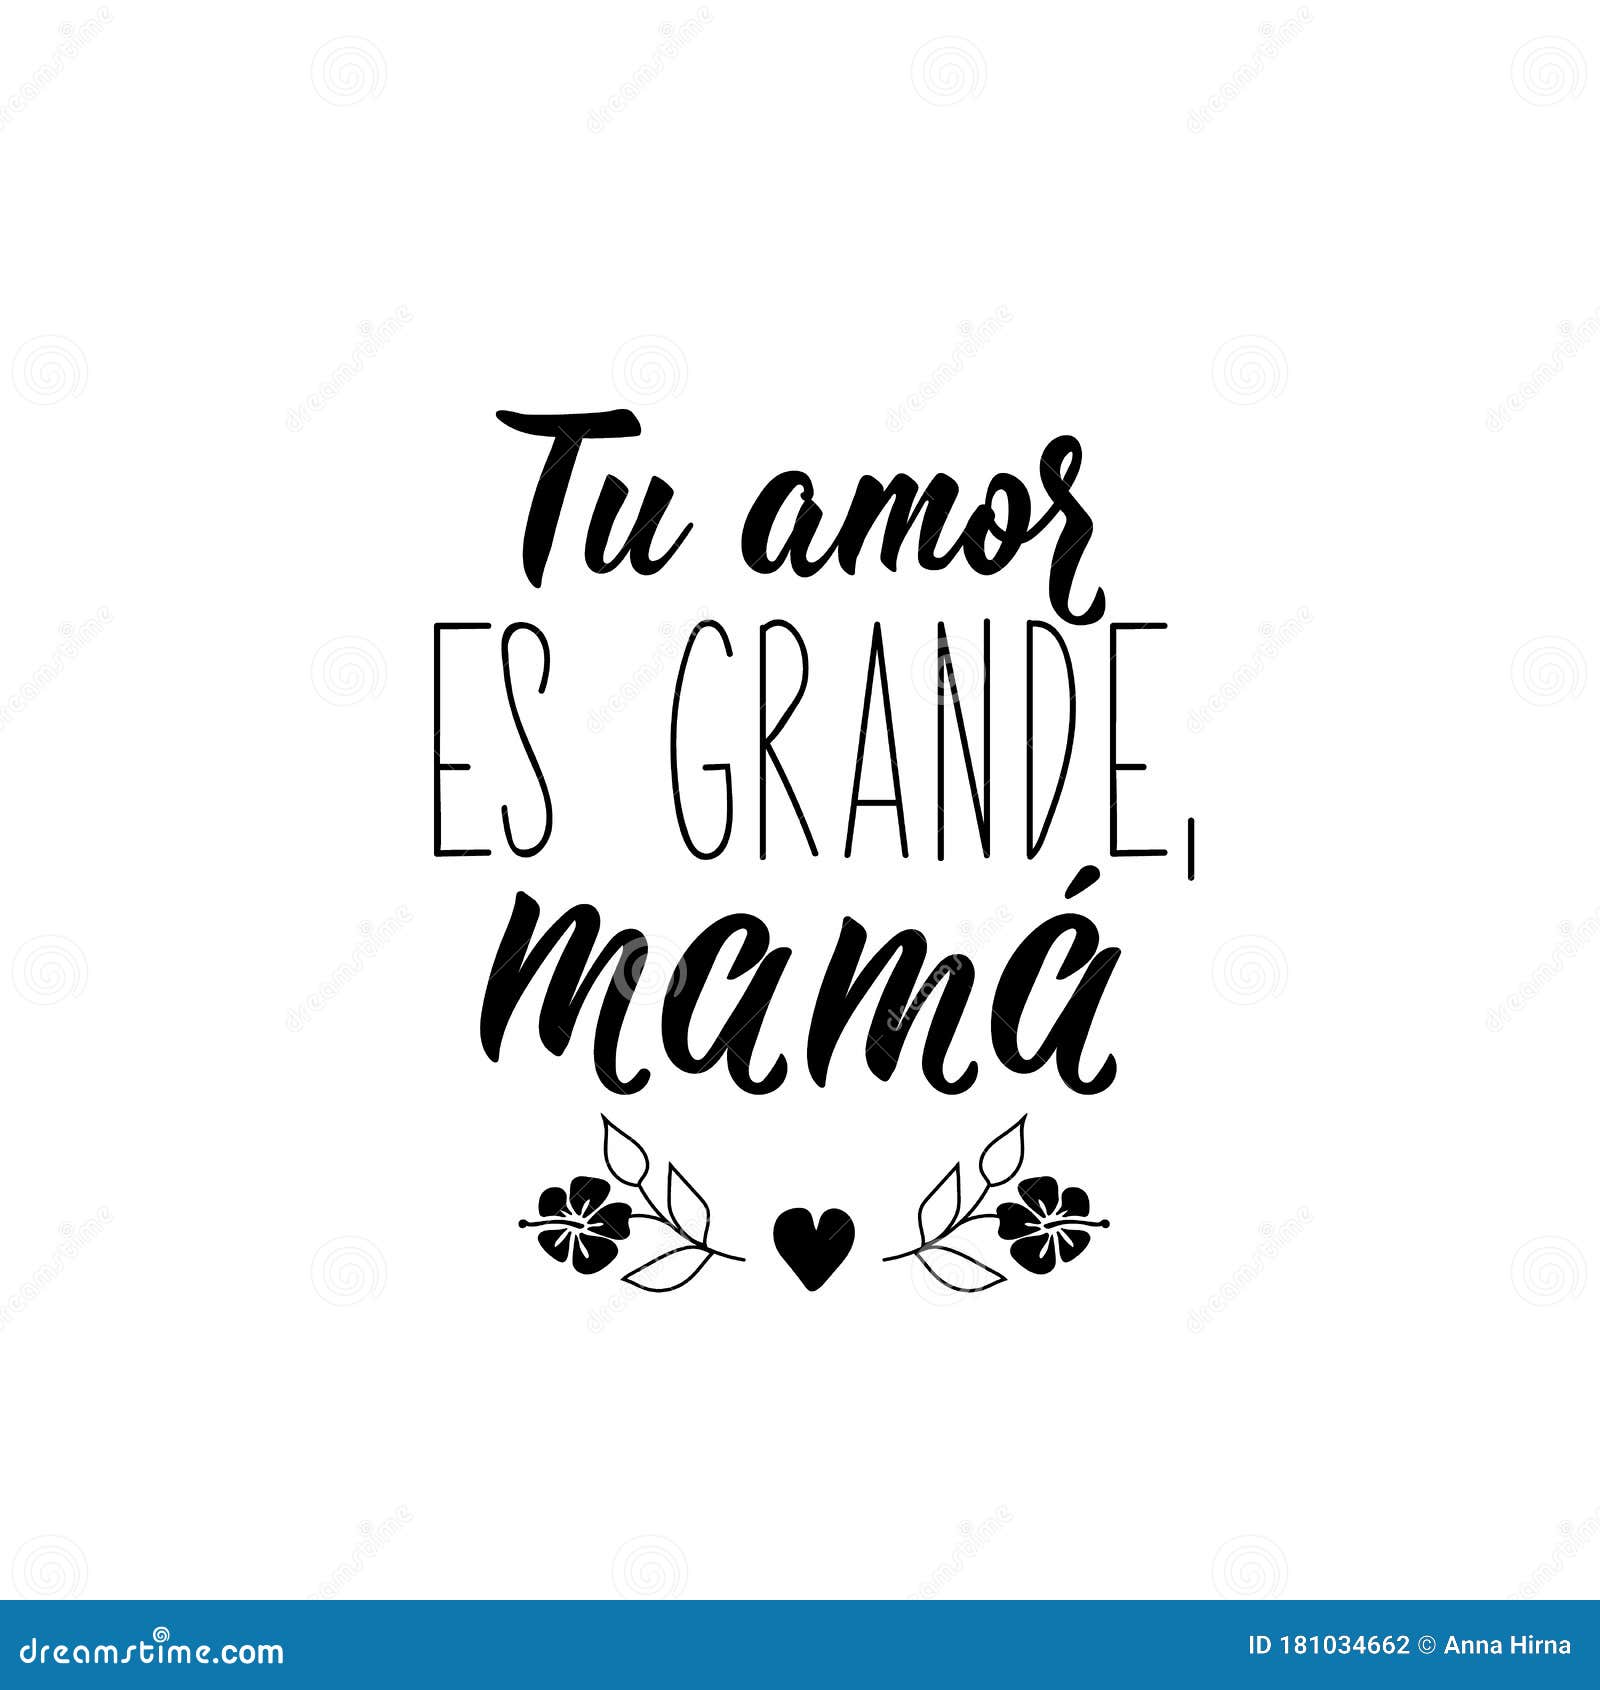 i love you mom in spanish translation